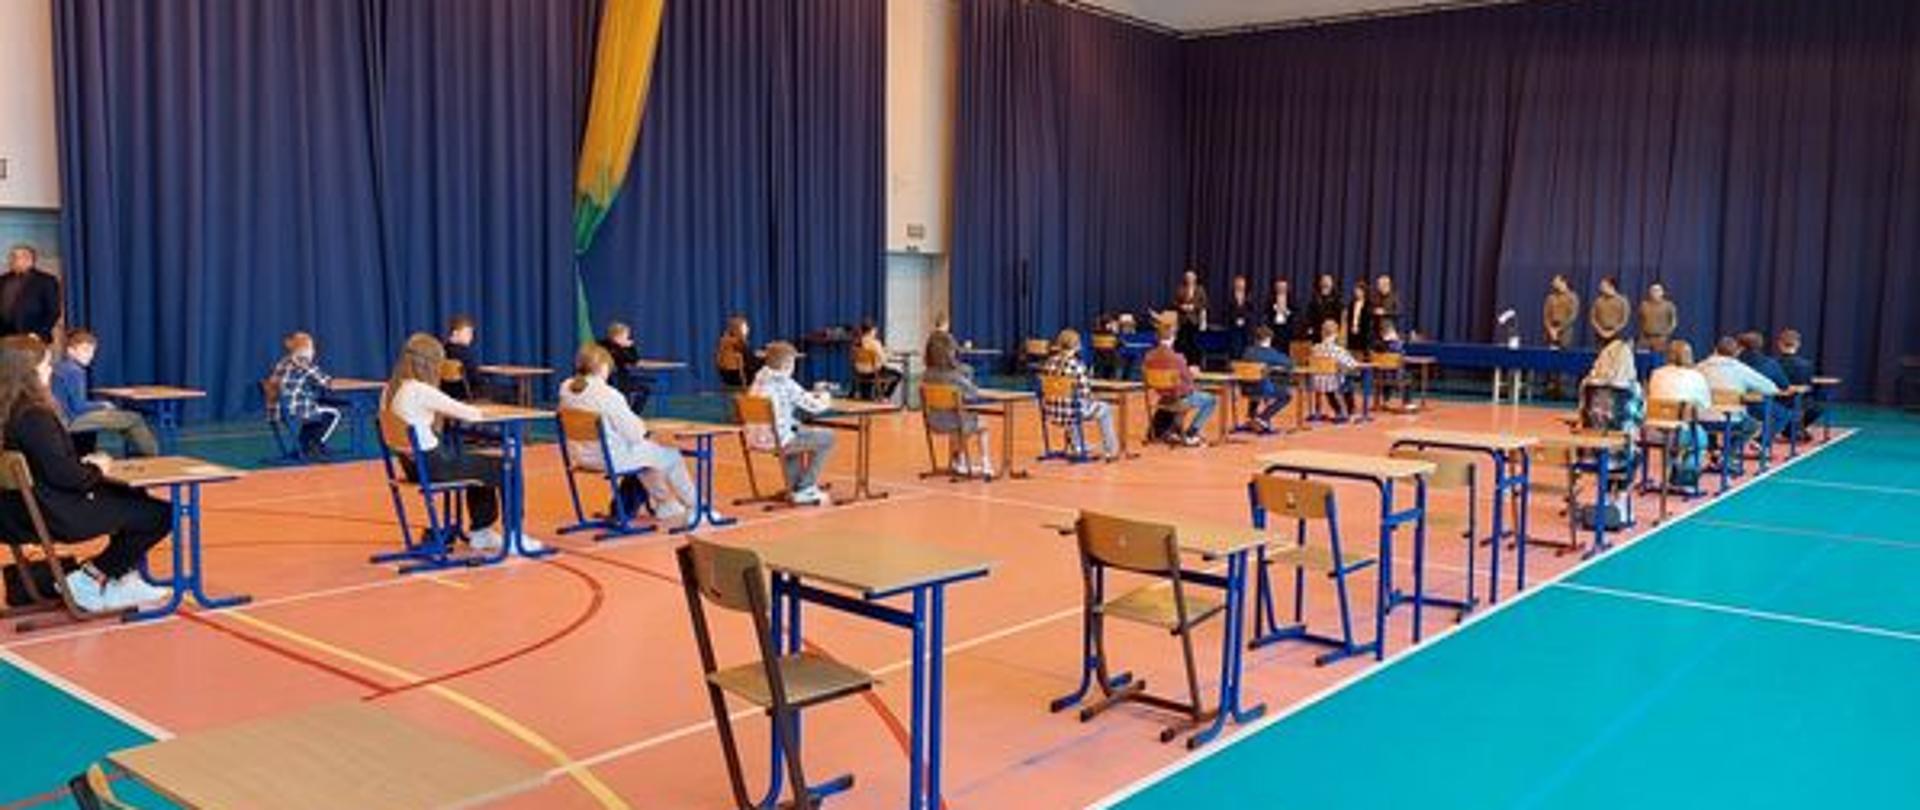 Uczniowie siedzą przy pojedynczych ławkach ustawionych w trzech rzędach na sali gimnastycznej. Przed nimi stoją organizatorzy i komisja. 